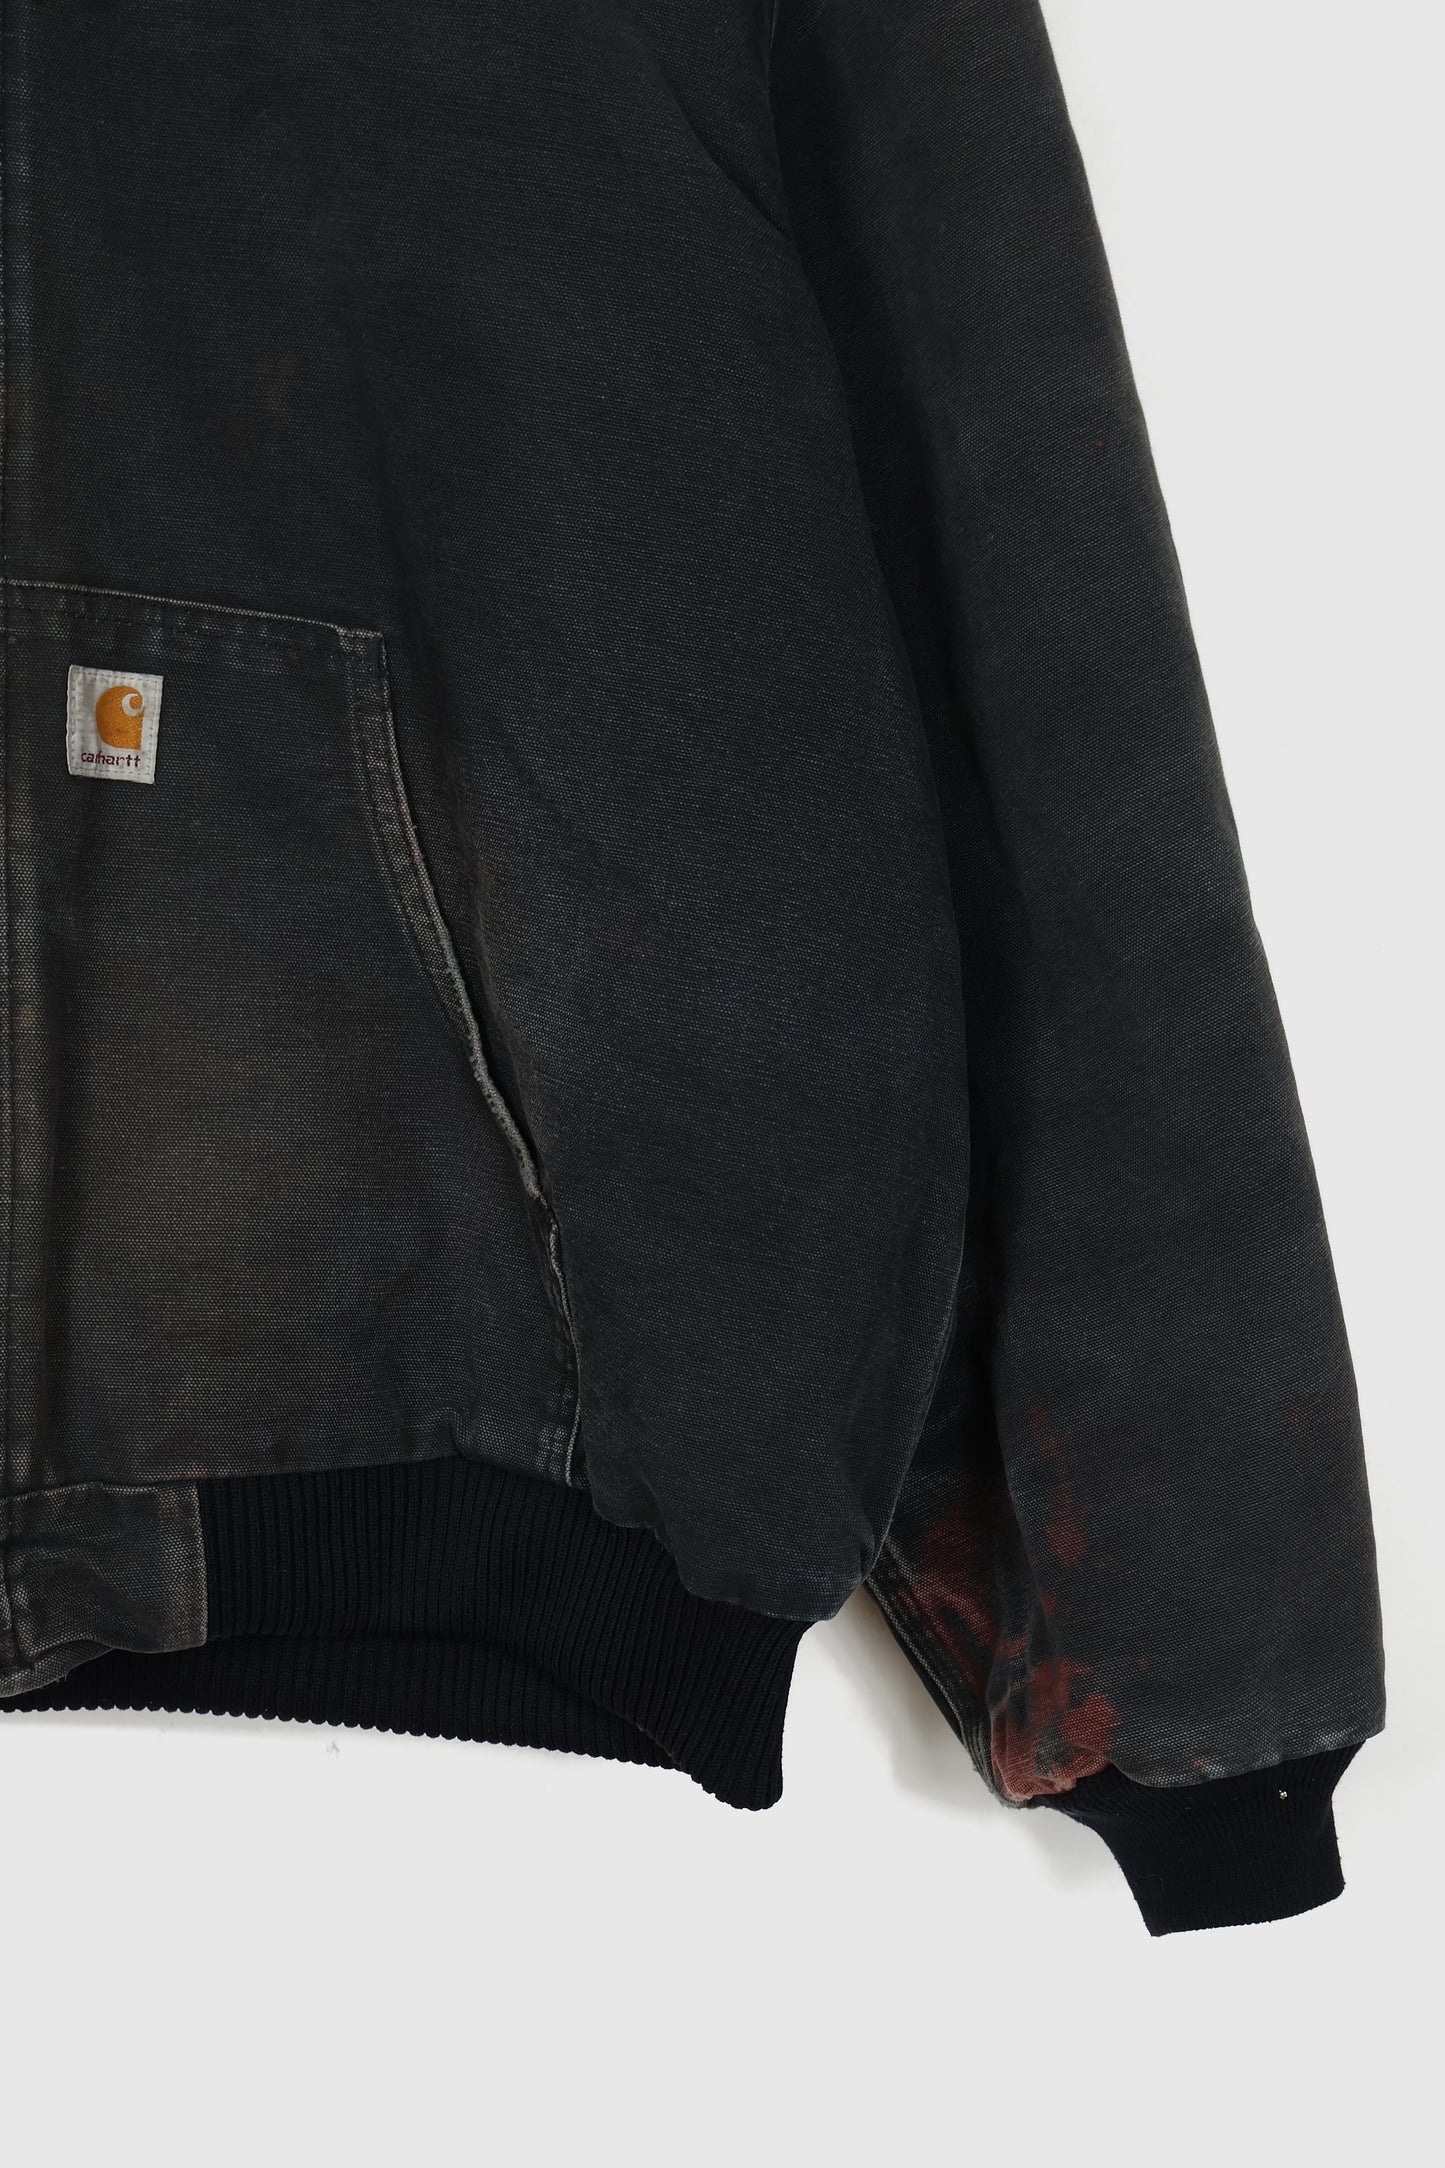 Vintage Distressed Carhartt Full Zip Hooded Jacket